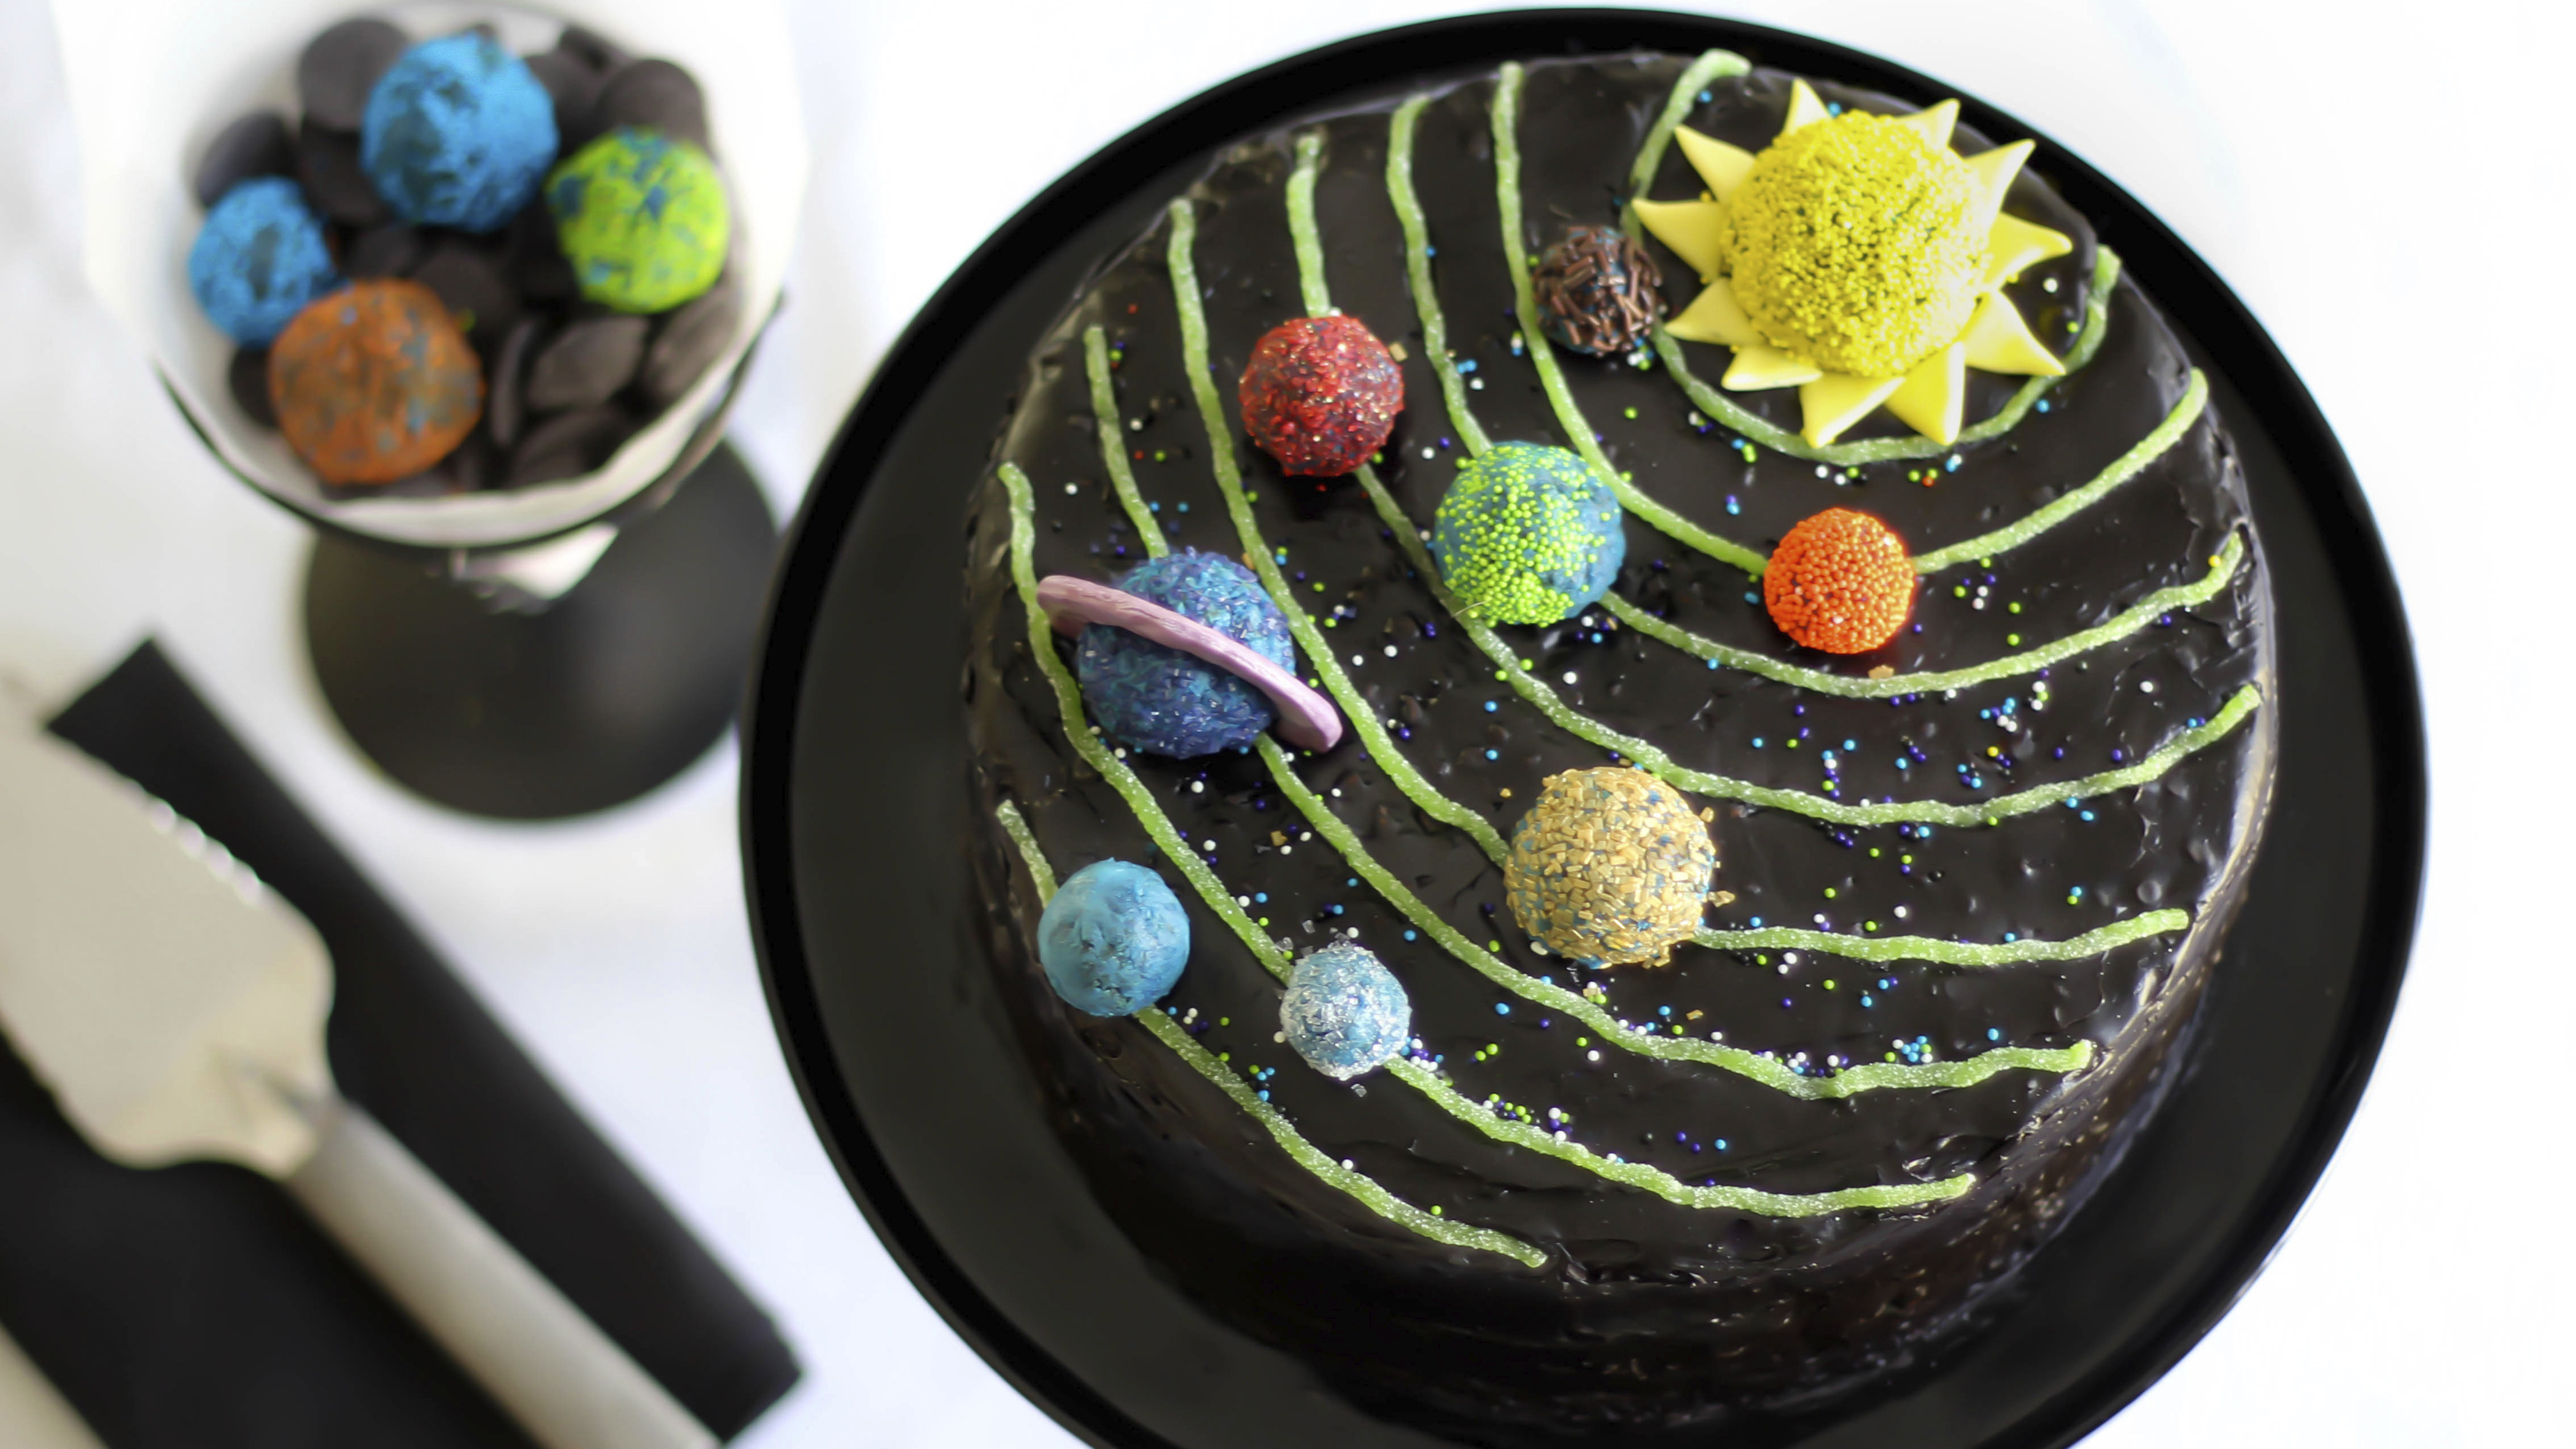 Gardening themed cake! 🥕🍅 : r/Baking